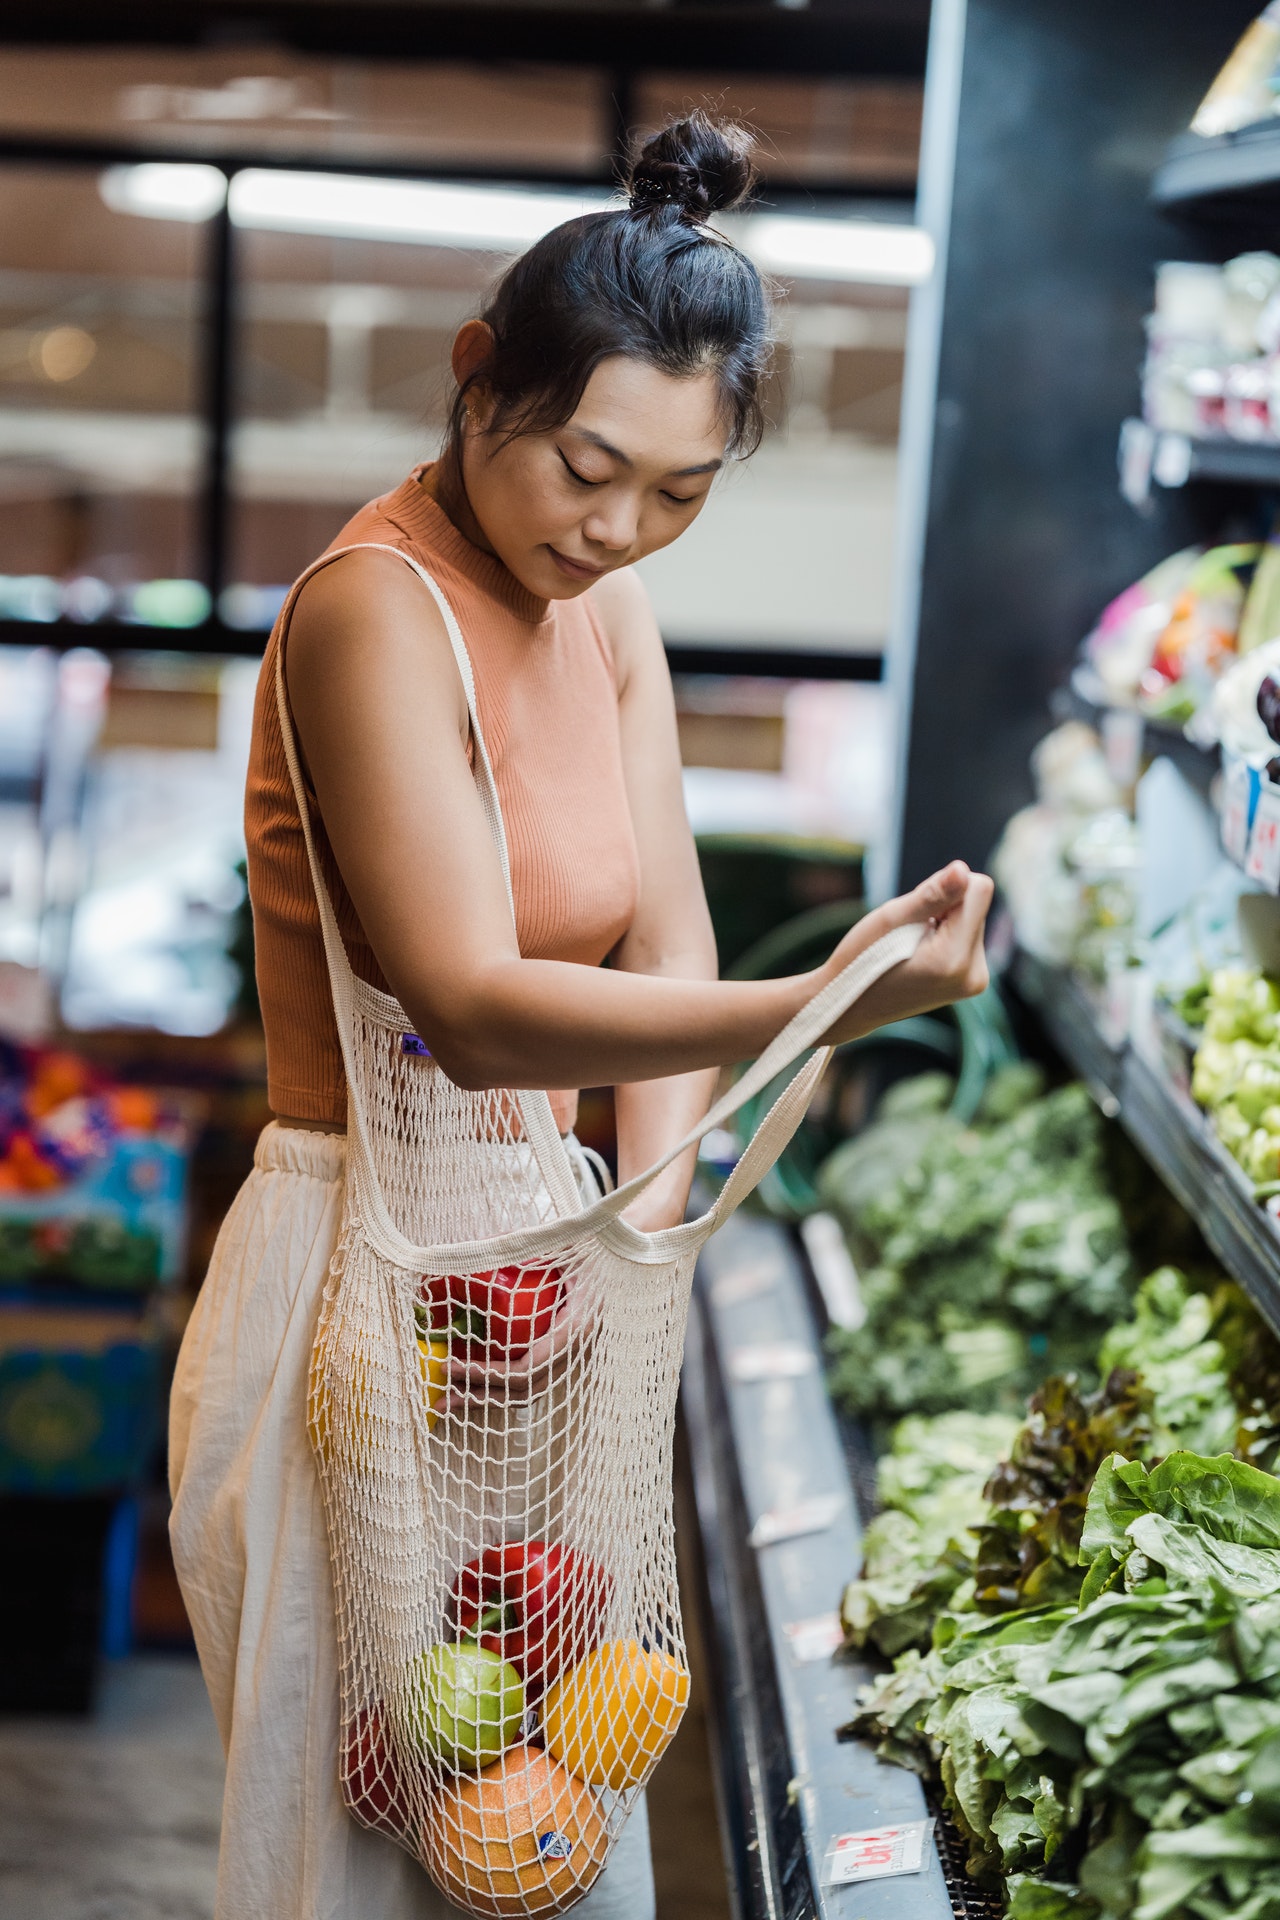 Dans un supermarché une femme asiatique dépose un légume dans son sac en filet